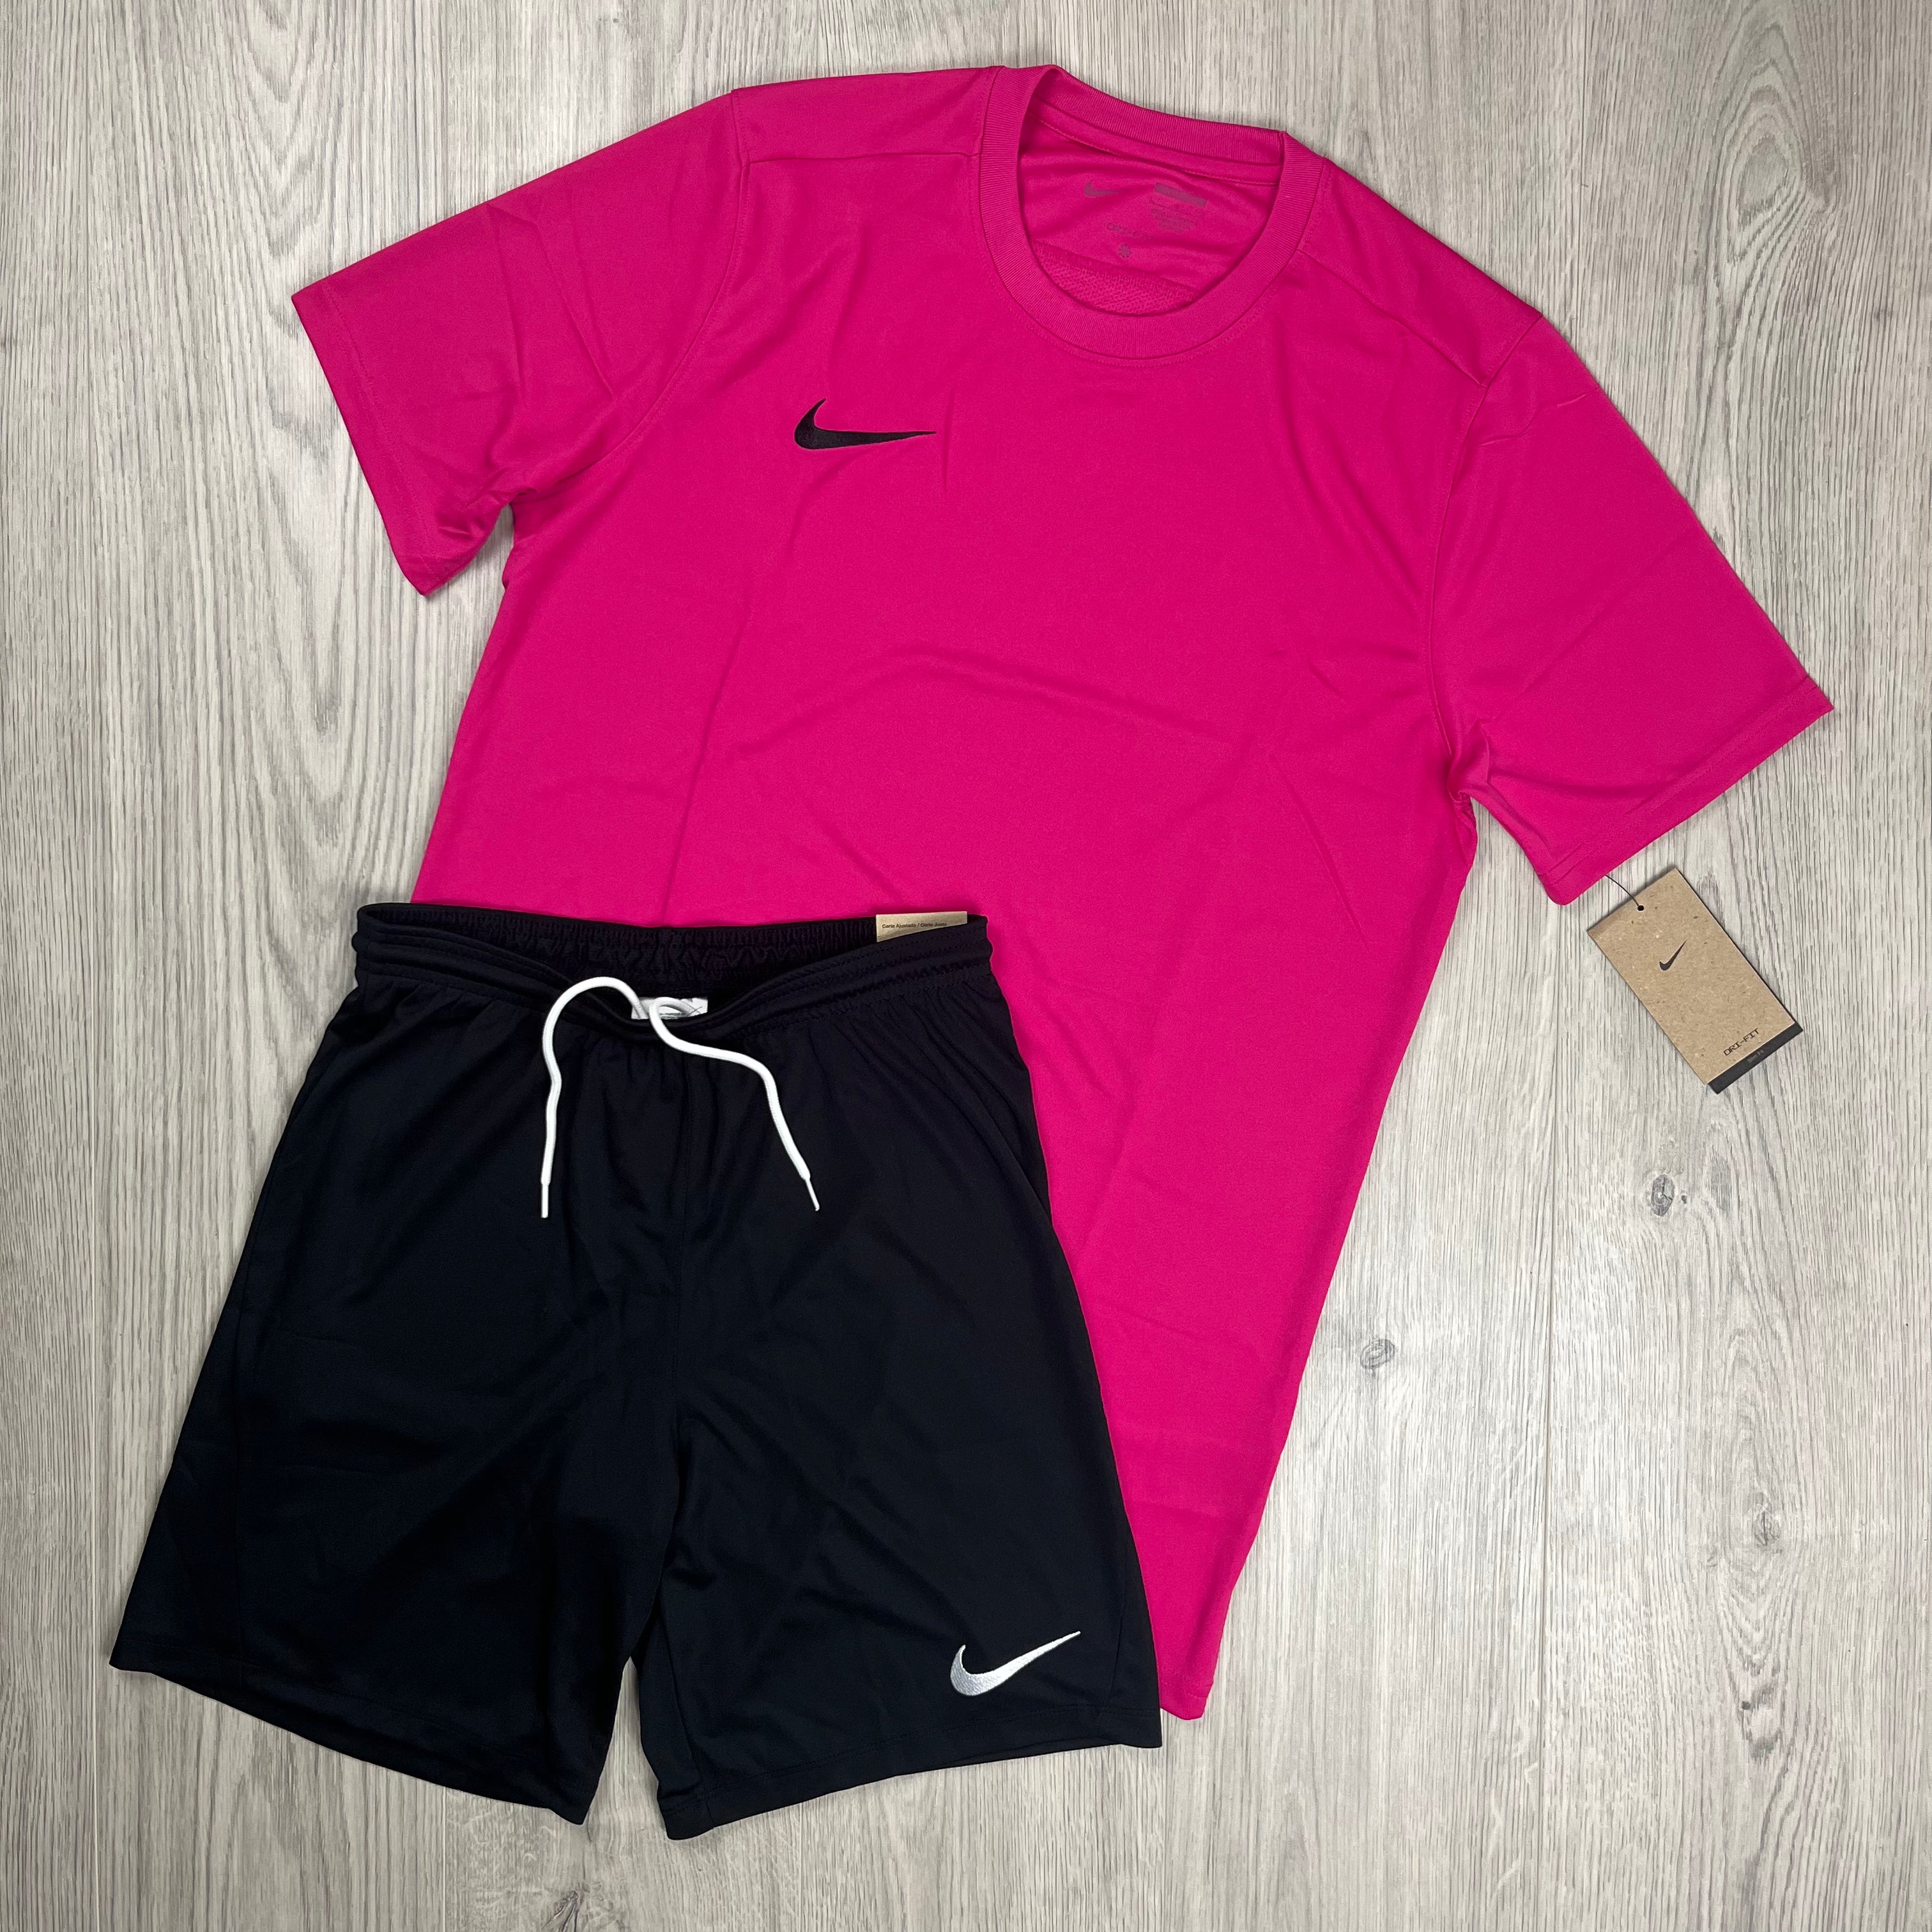 Nike Dri-Fit Set - Pink/Black